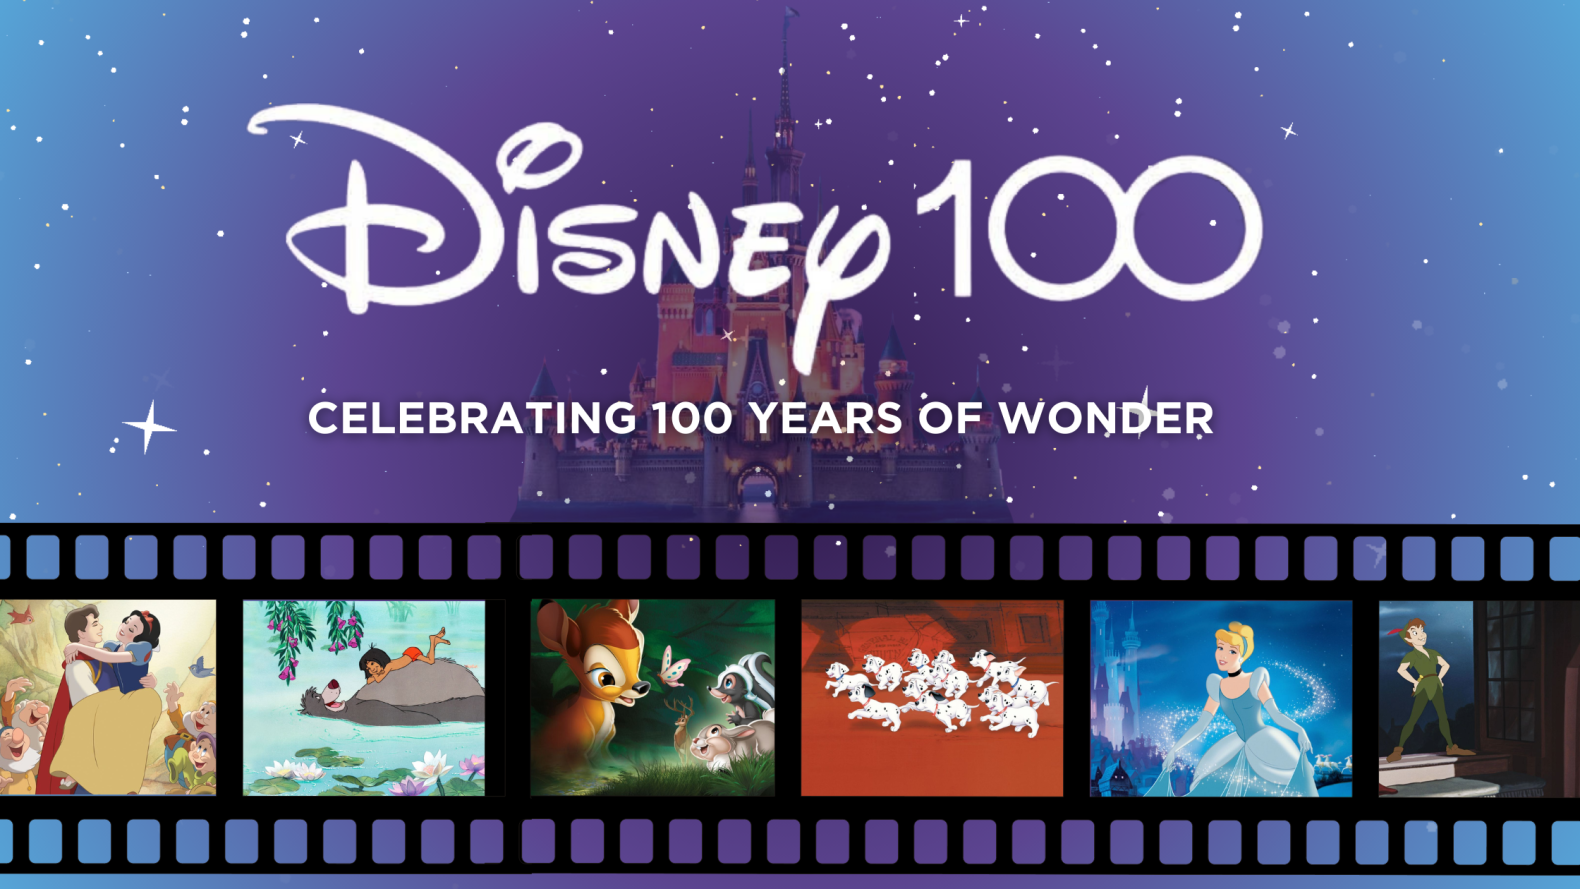 Disney classic 100